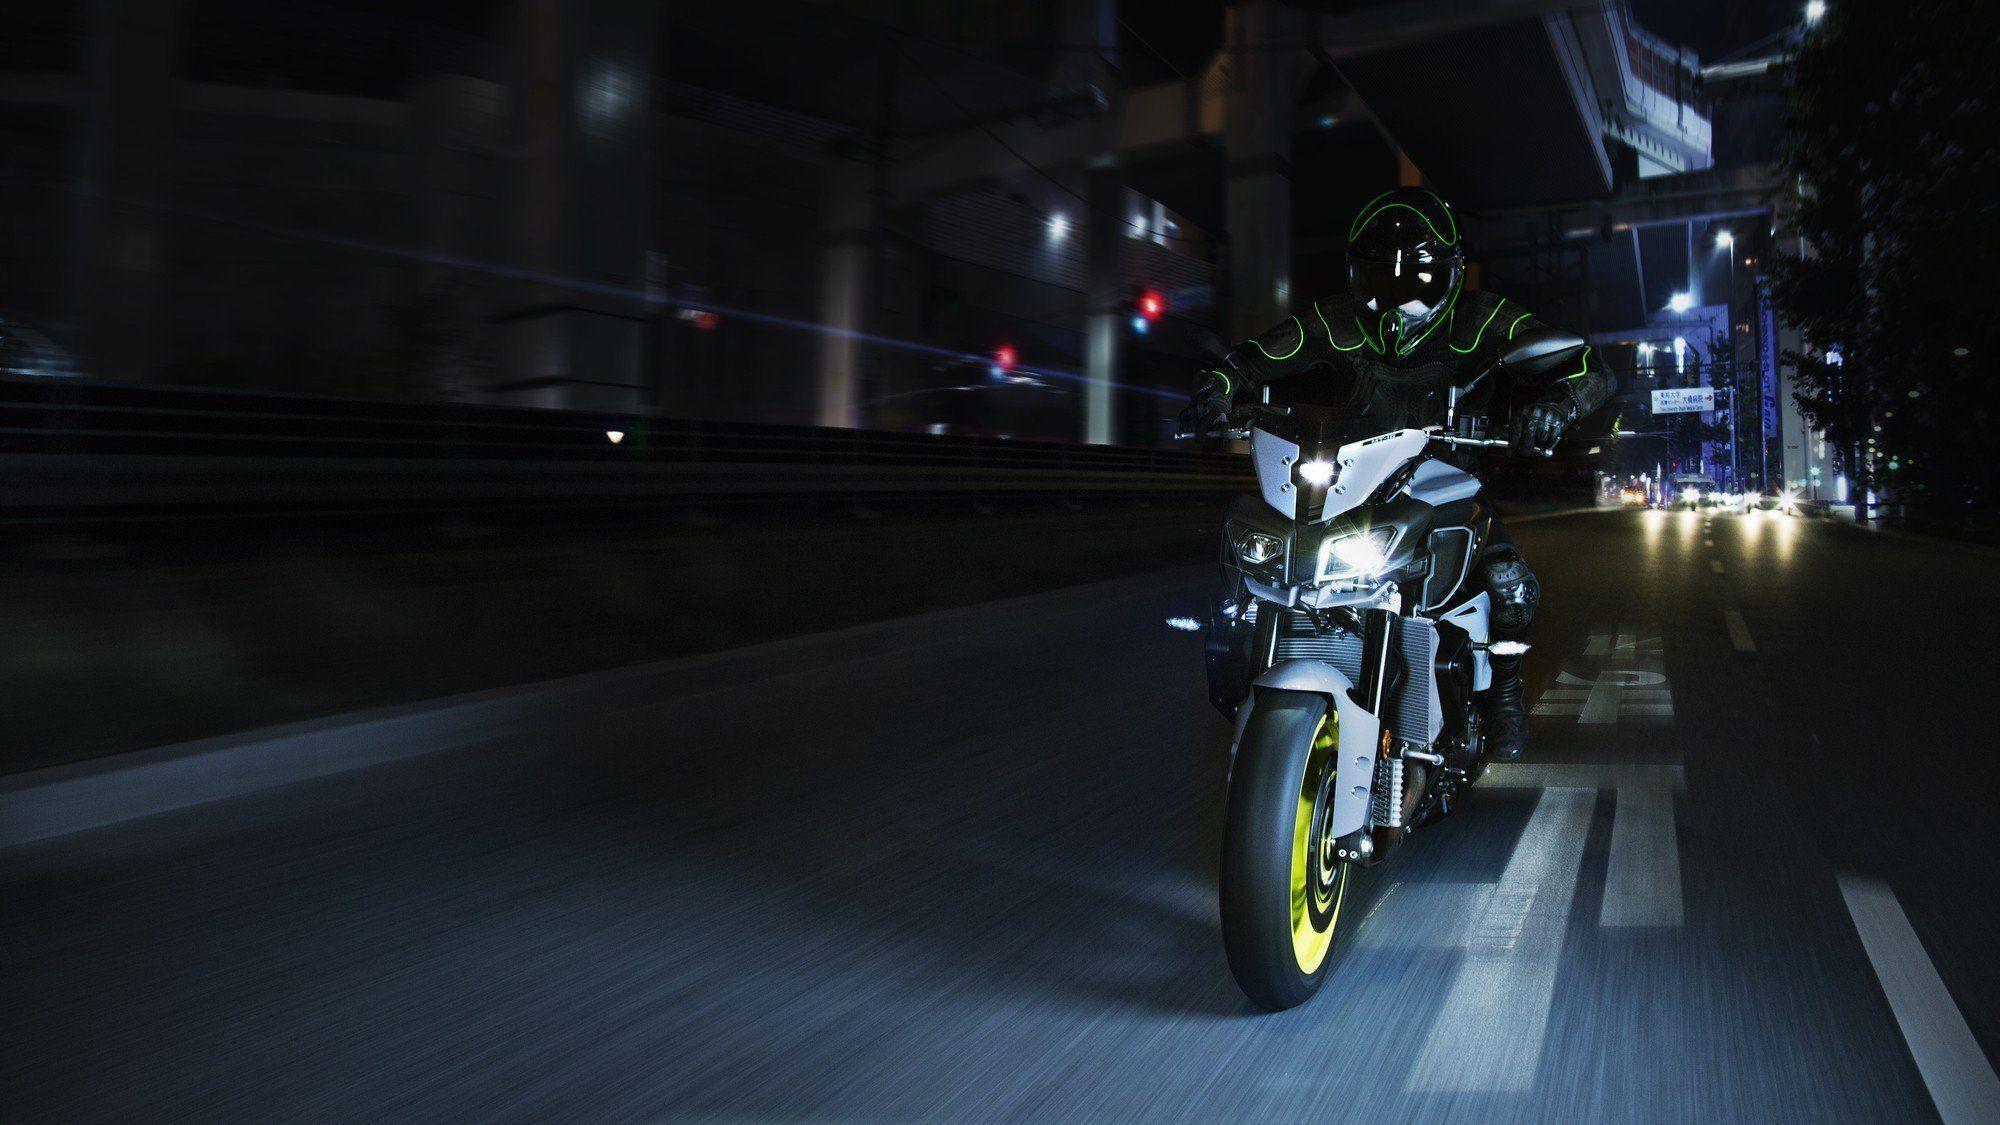 Yamaha MT 10 Ray Of Darkness Motorcycles Wallpaperx1125